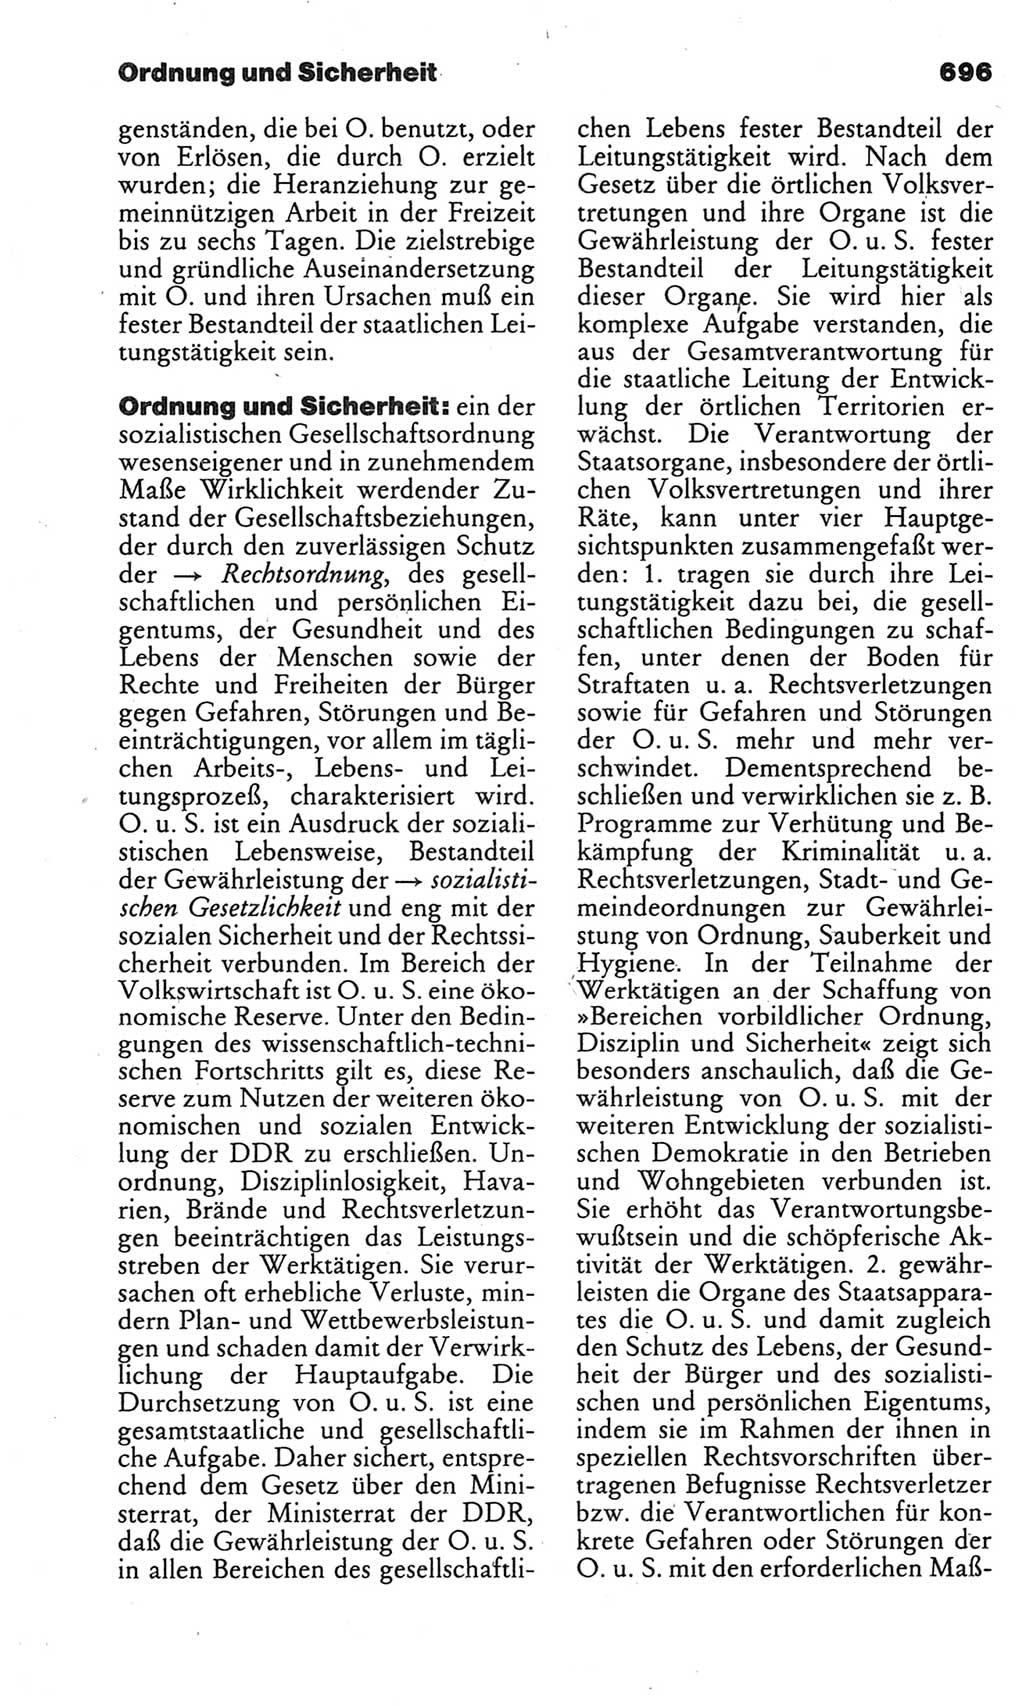 Kleines politisches Wörterbuch [Deutsche Demokratische Republik (DDR)] 1983, Seite 696 (Kl. pol. Wb. DDR 1983, S. 696)